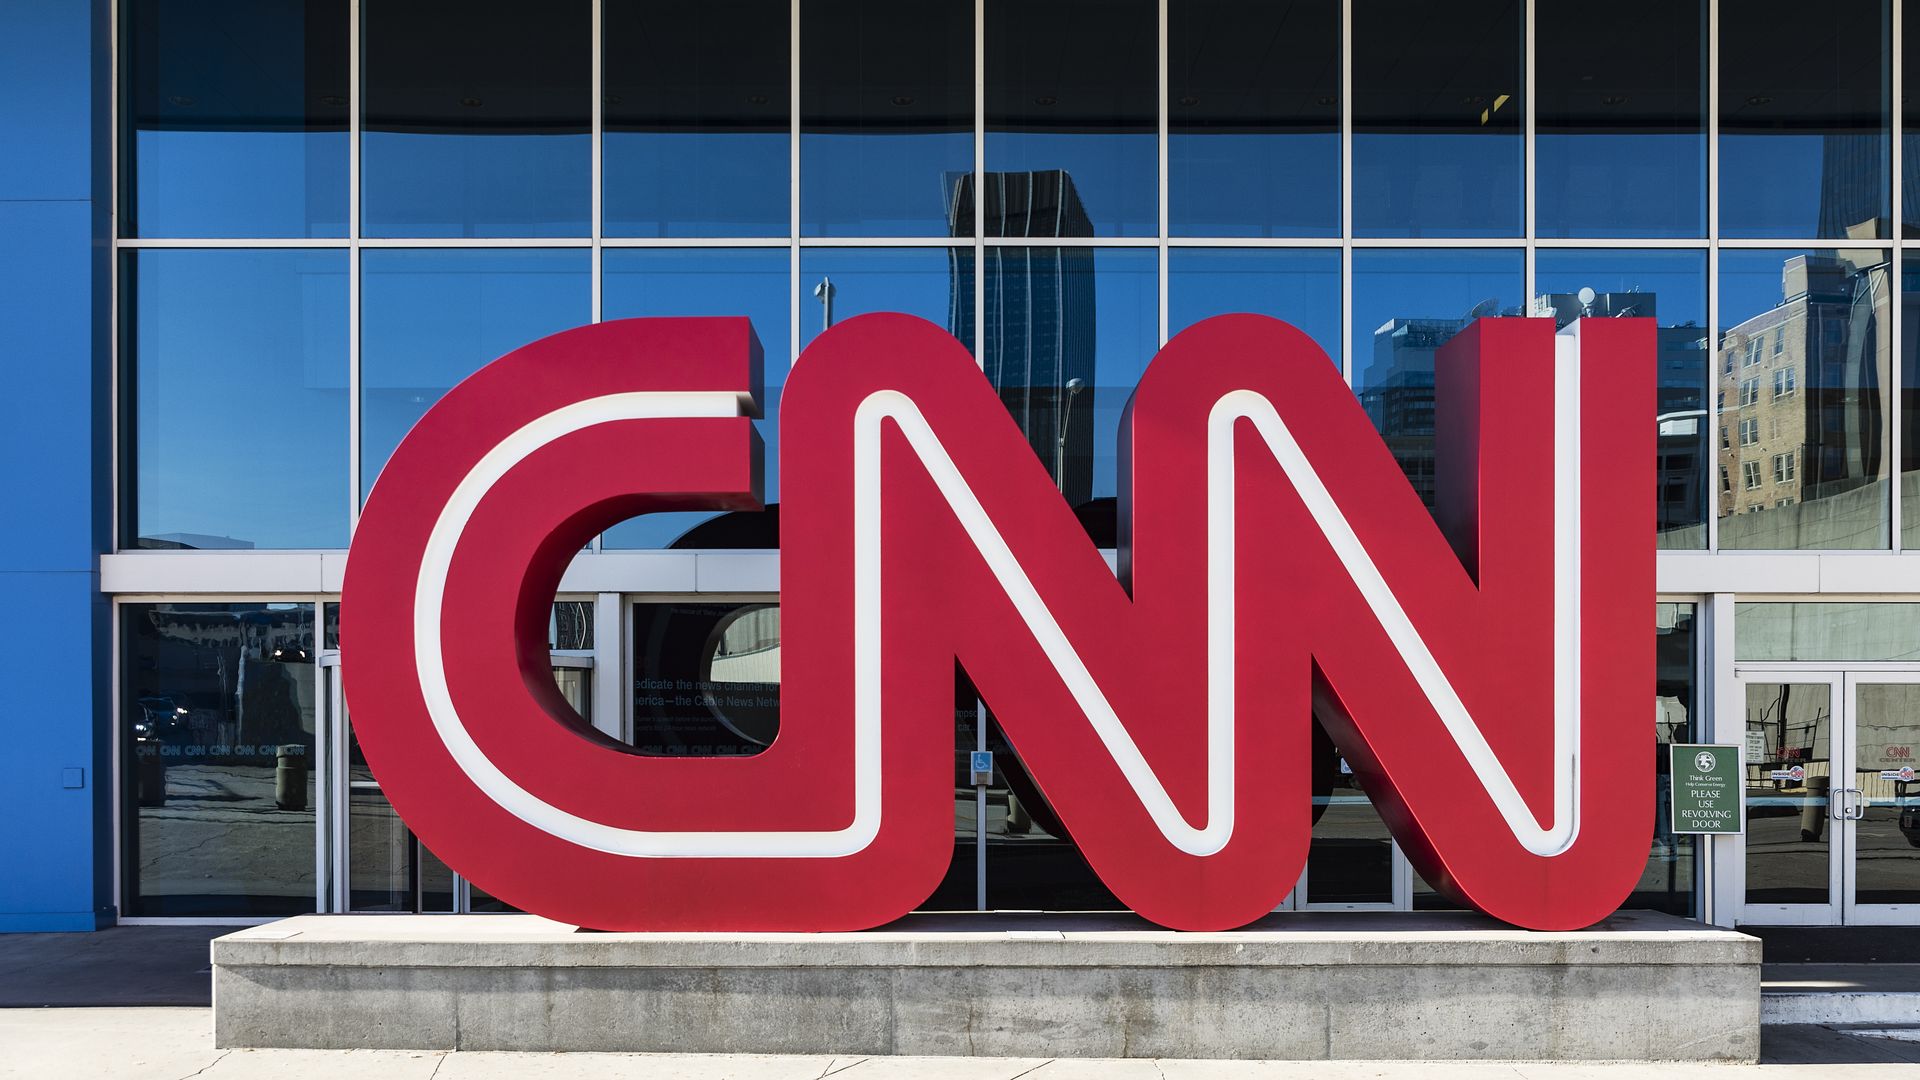 CNN headquarters